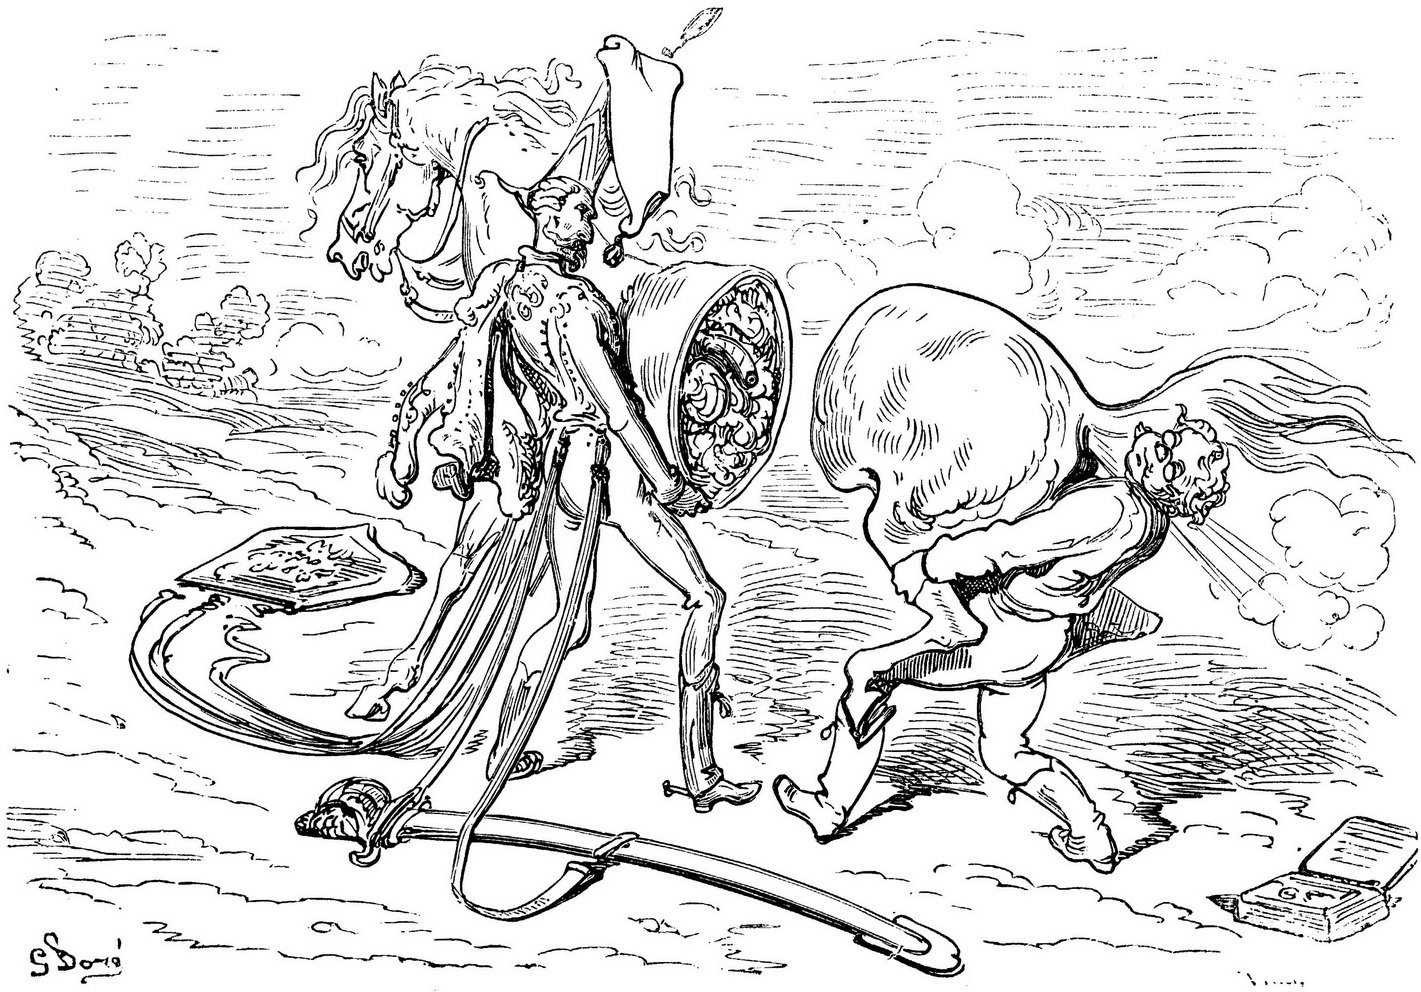 El Barón de Münchhausen vuelve a exagerar, ahora con ilustraciones de Doré